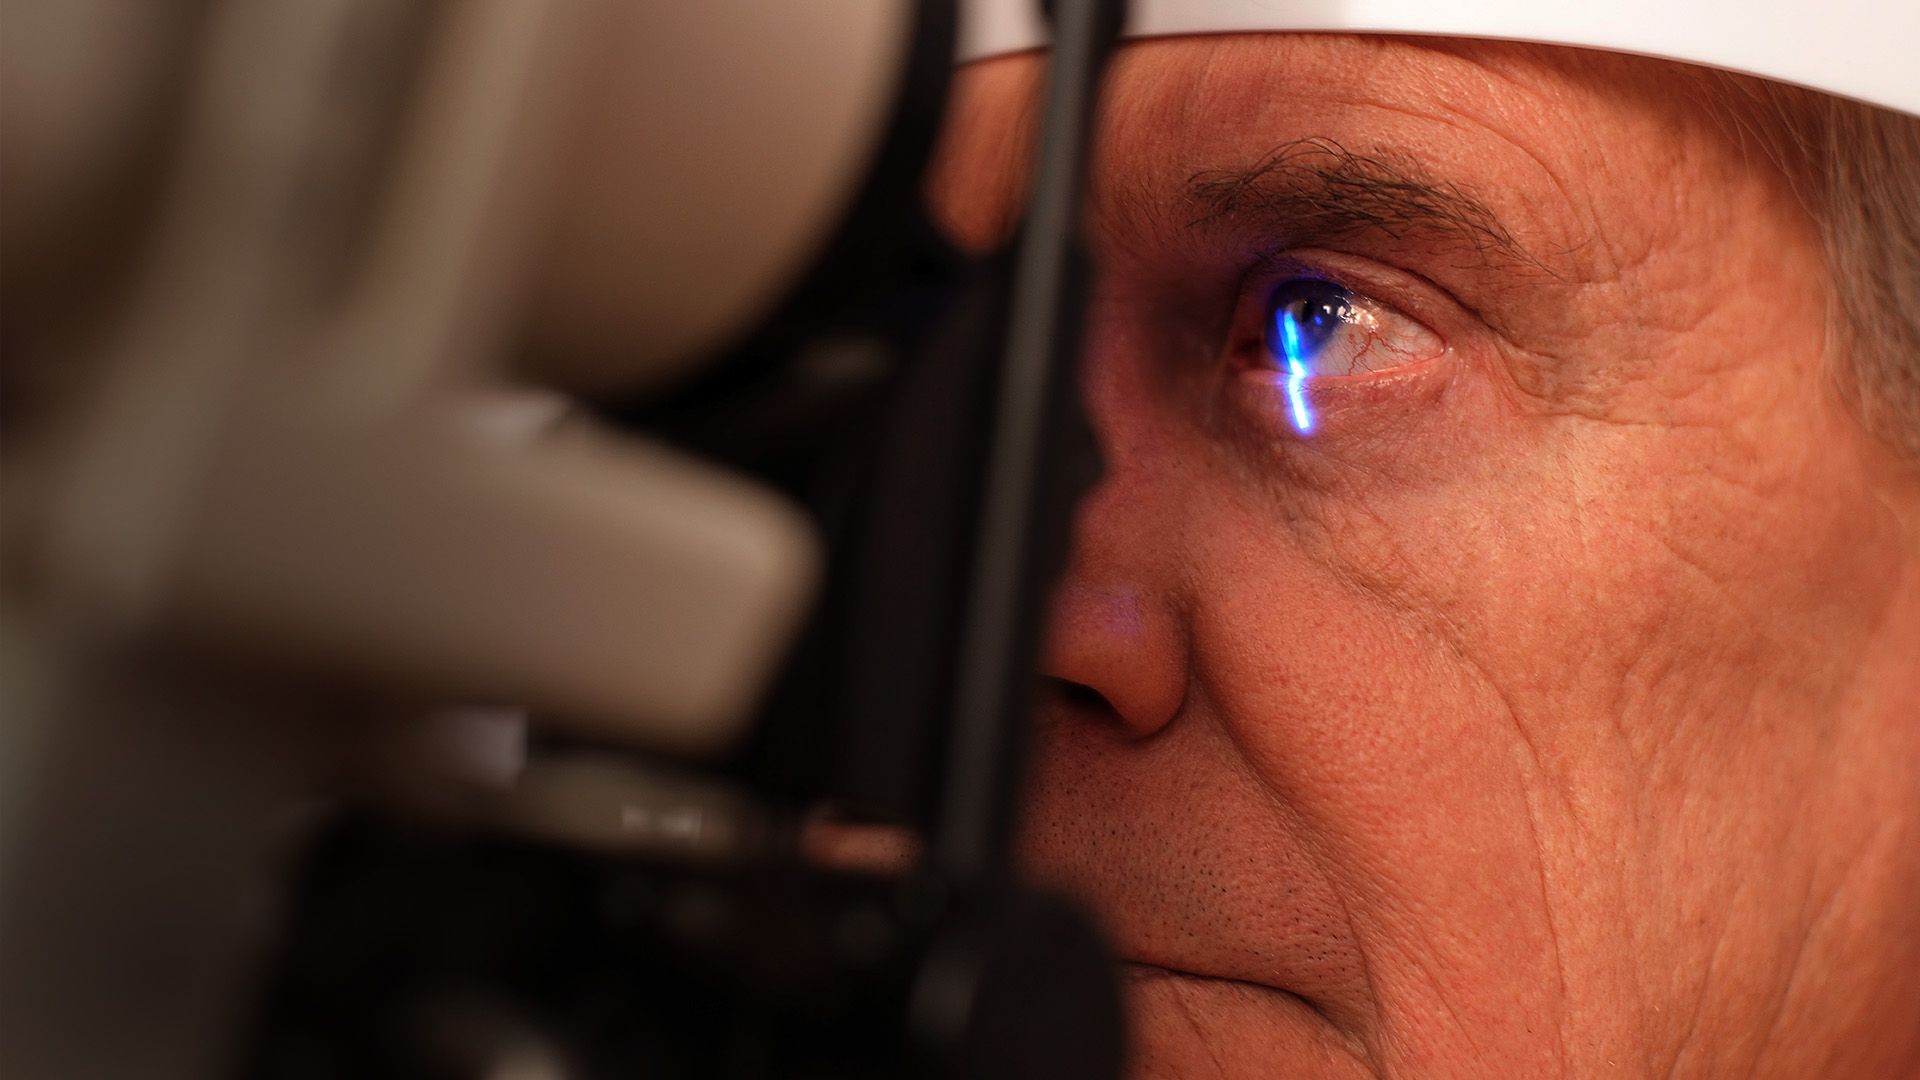 Eye Exam at Beyond Eyecare in Herndon, VA